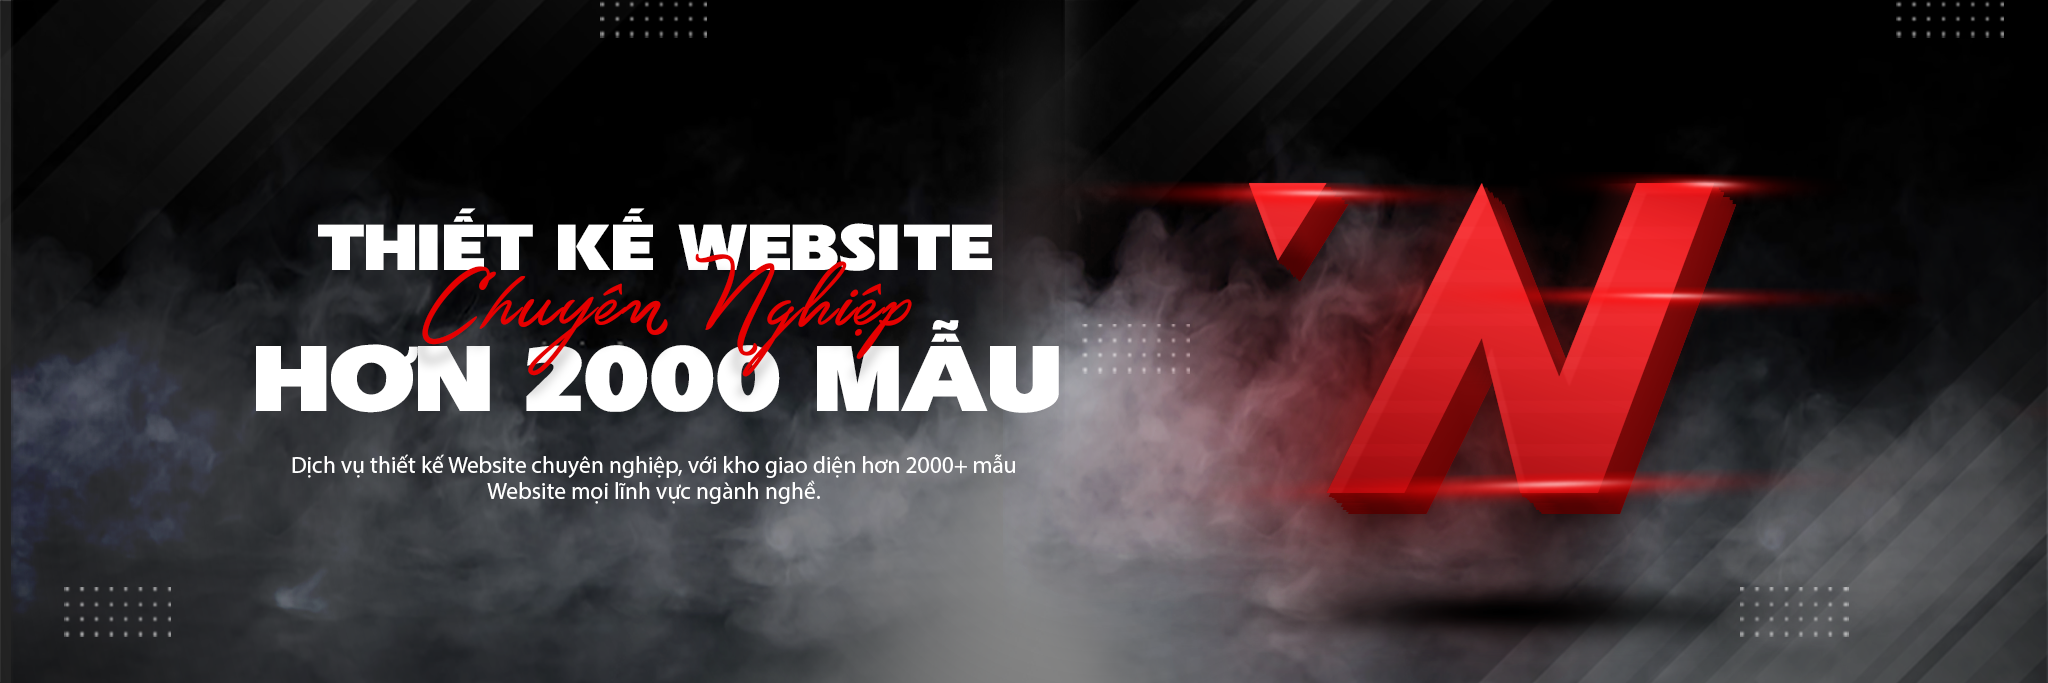 WebNow - Đơn vị thiết kế website Biên Hòa Đồng Nai giá rẻ chuyên nghiệp tại TP.HCM 